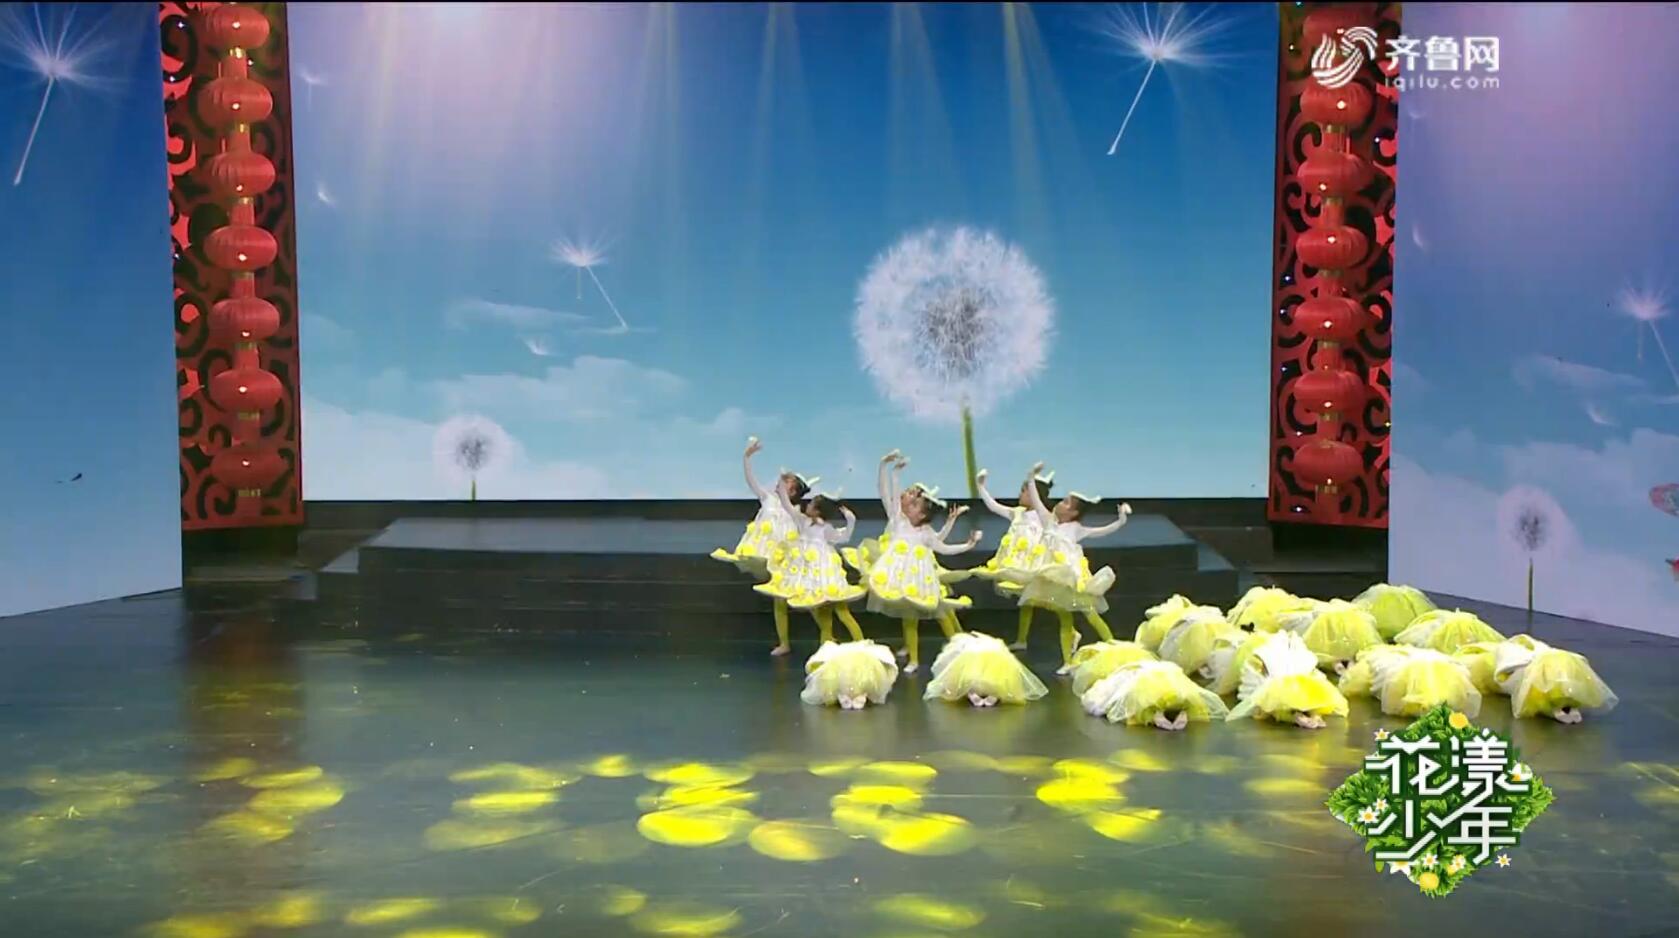 舞蹈《蒲公英的远行》——2019山东广播电视台少儿春节大联欢优秀节目展播